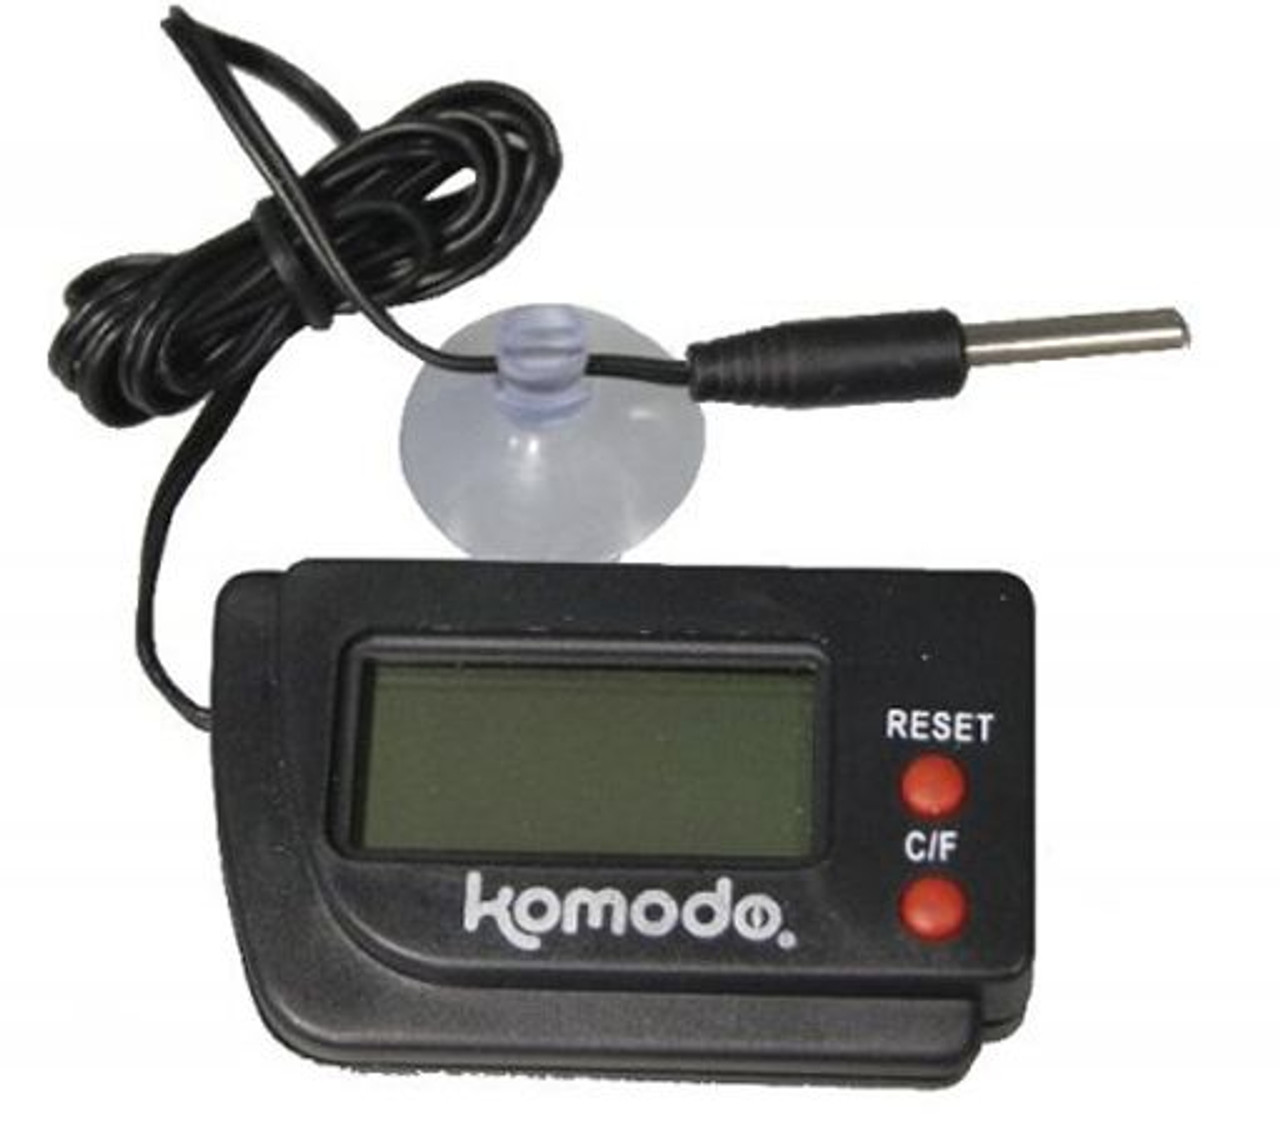 Komodo Digital Thermometer Image